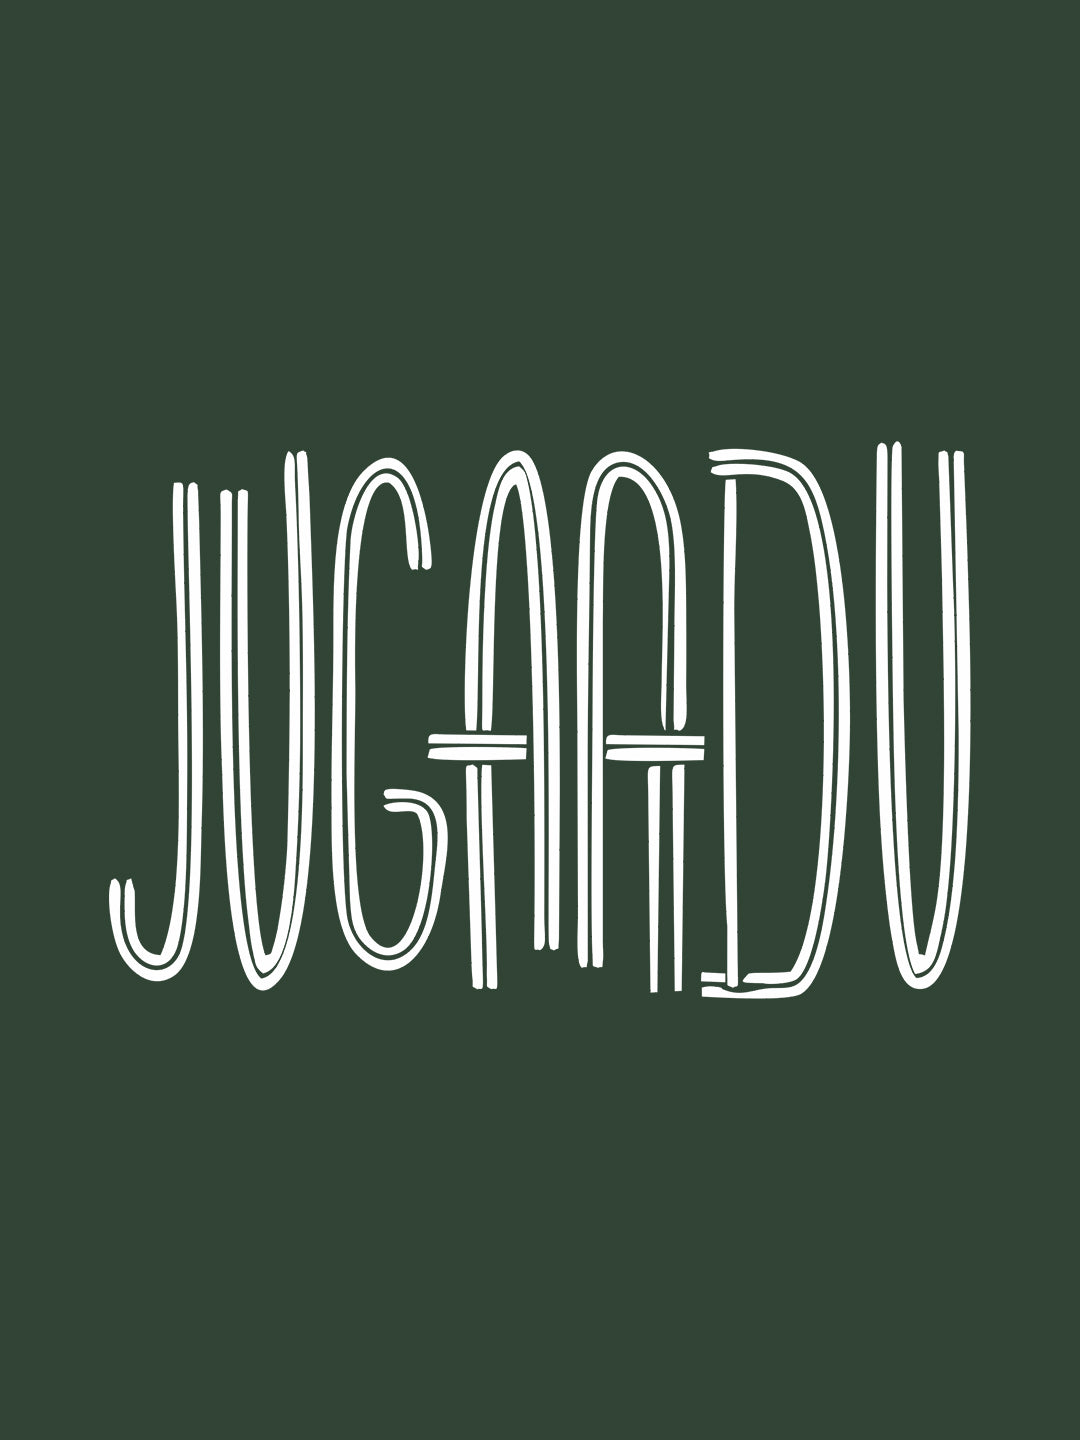 JUGAADU LIGHT GREEN T-SHIRT